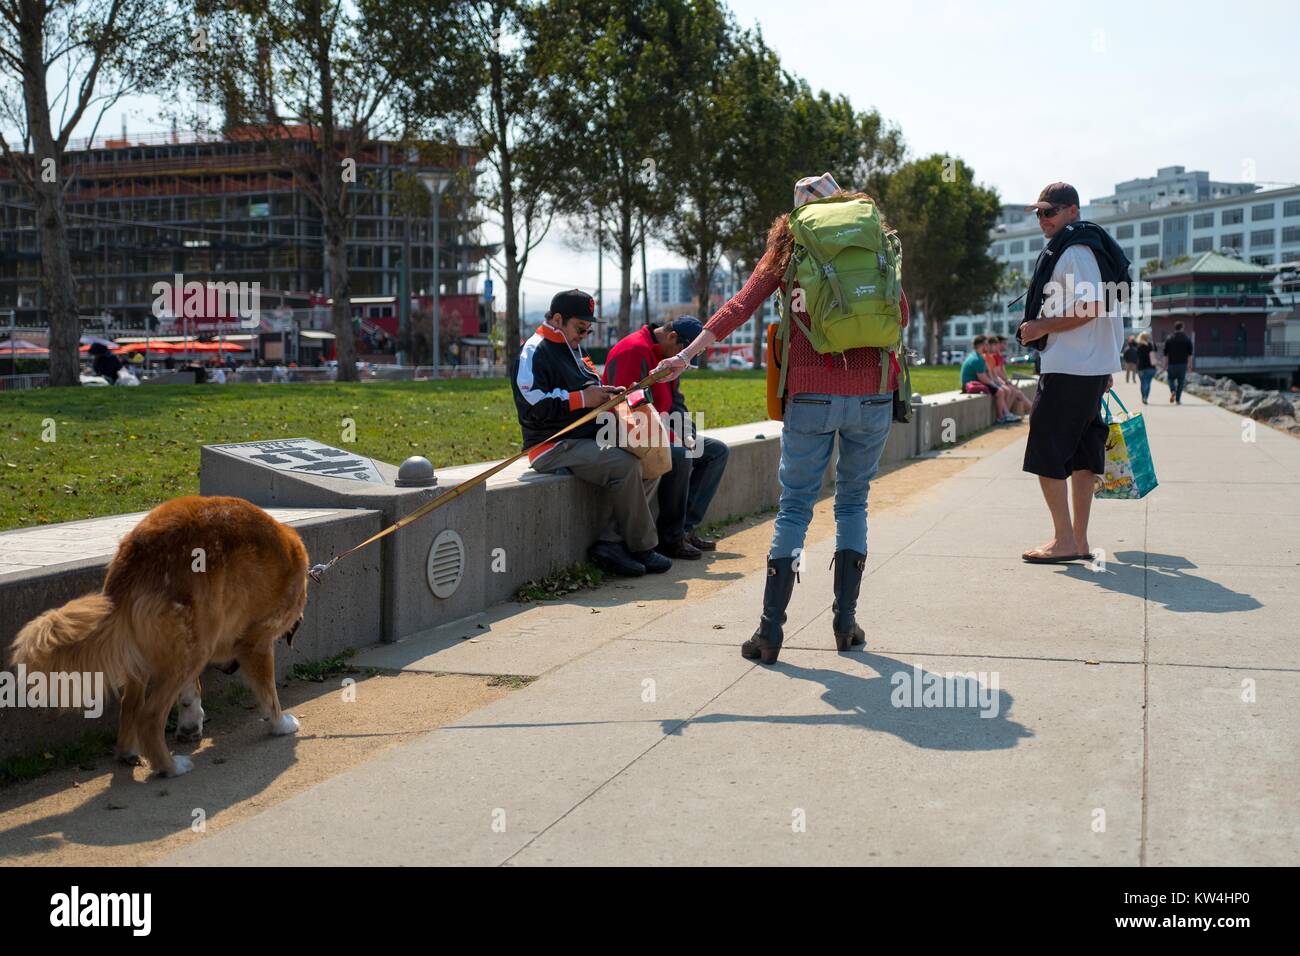 Ein paar Gehminuten Ihren Hund durch China Basin Park vor dem Hund Tage Sommer Werbeartikel baseball spiel, eine jährliche Veranstaltung, in der die San Francisco Giants Baseball Team können die Fans ihre Hunde in eine reguläre Saison Spiel zu holen, in der Nähe von ATT Park im China Becken Viertel von San Francisco, Kalifornien, 21. August 2016. Stockfoto